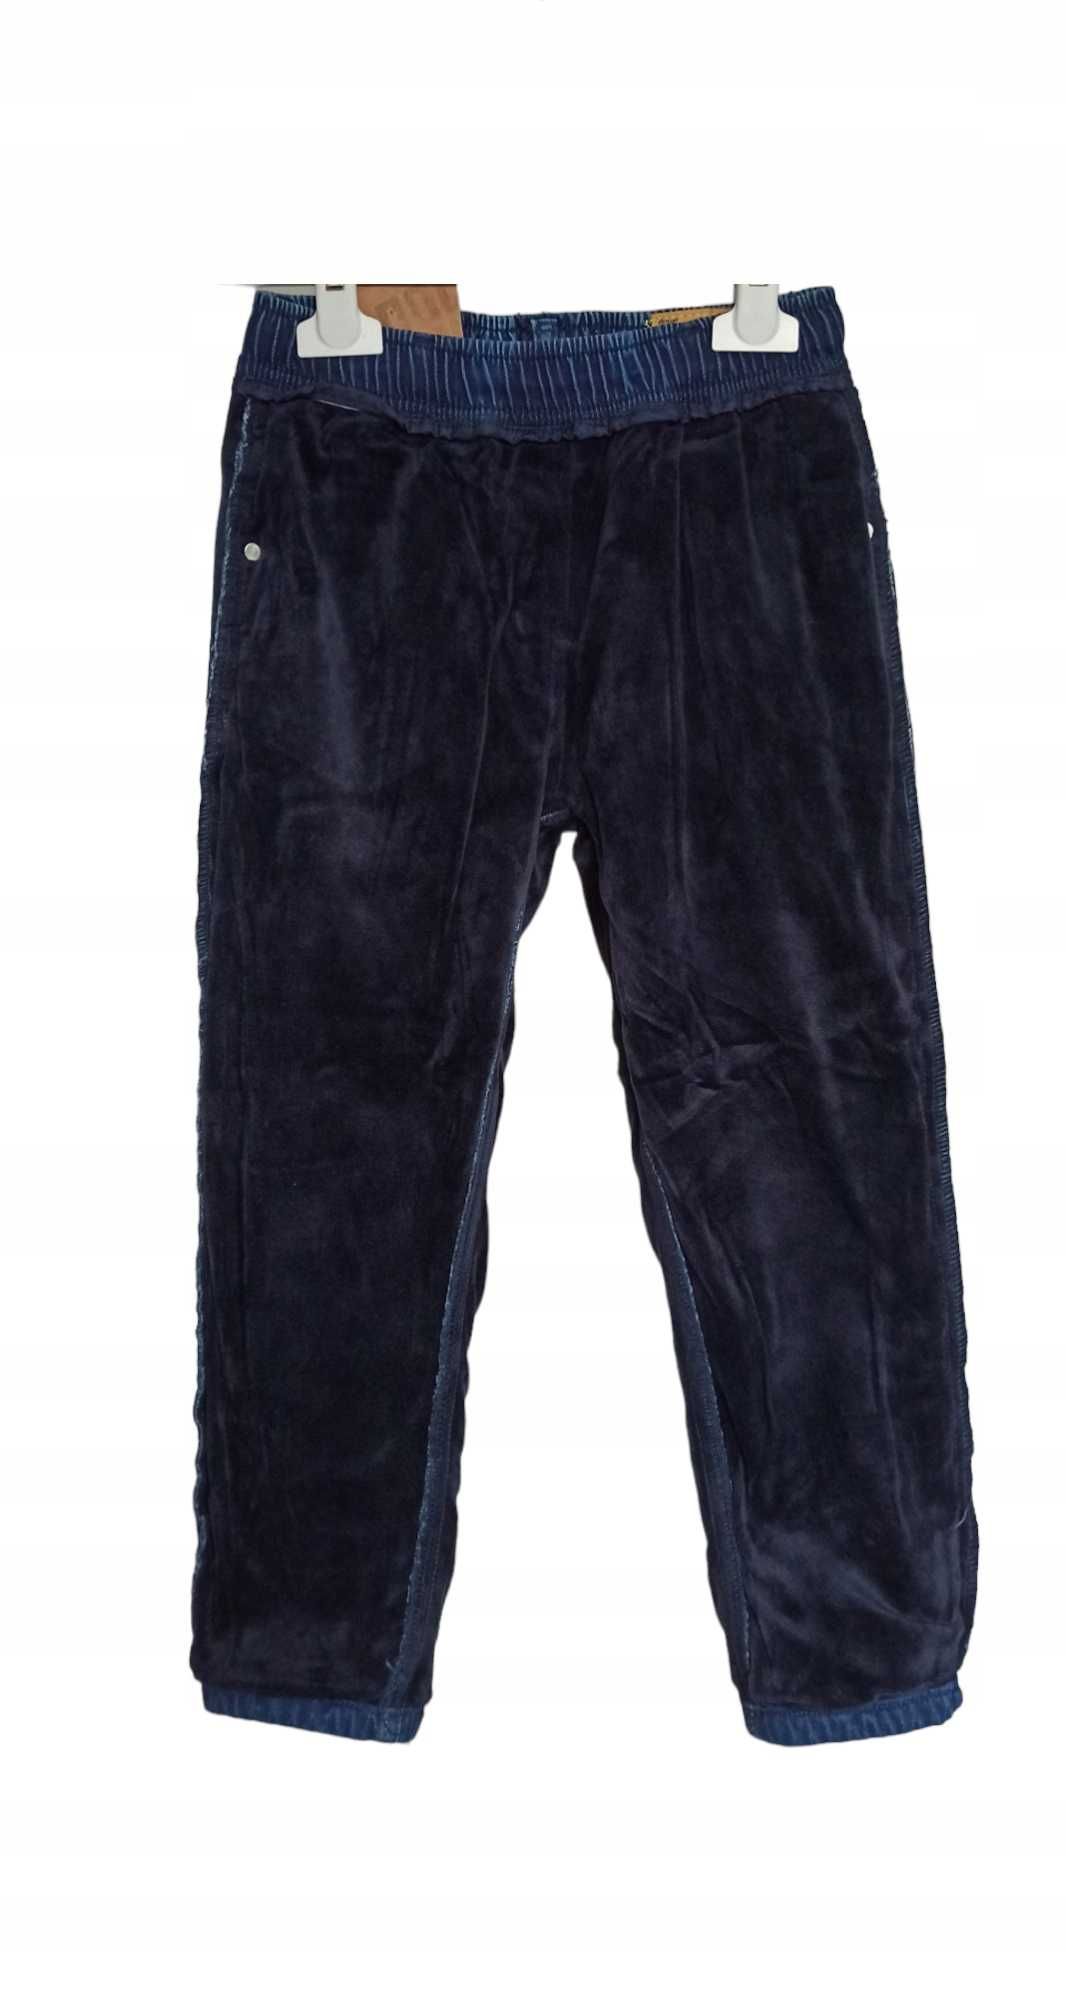 Spodnie Jeans miękkie  elastyczne GUMA ocieplane polarem nowy 122-128